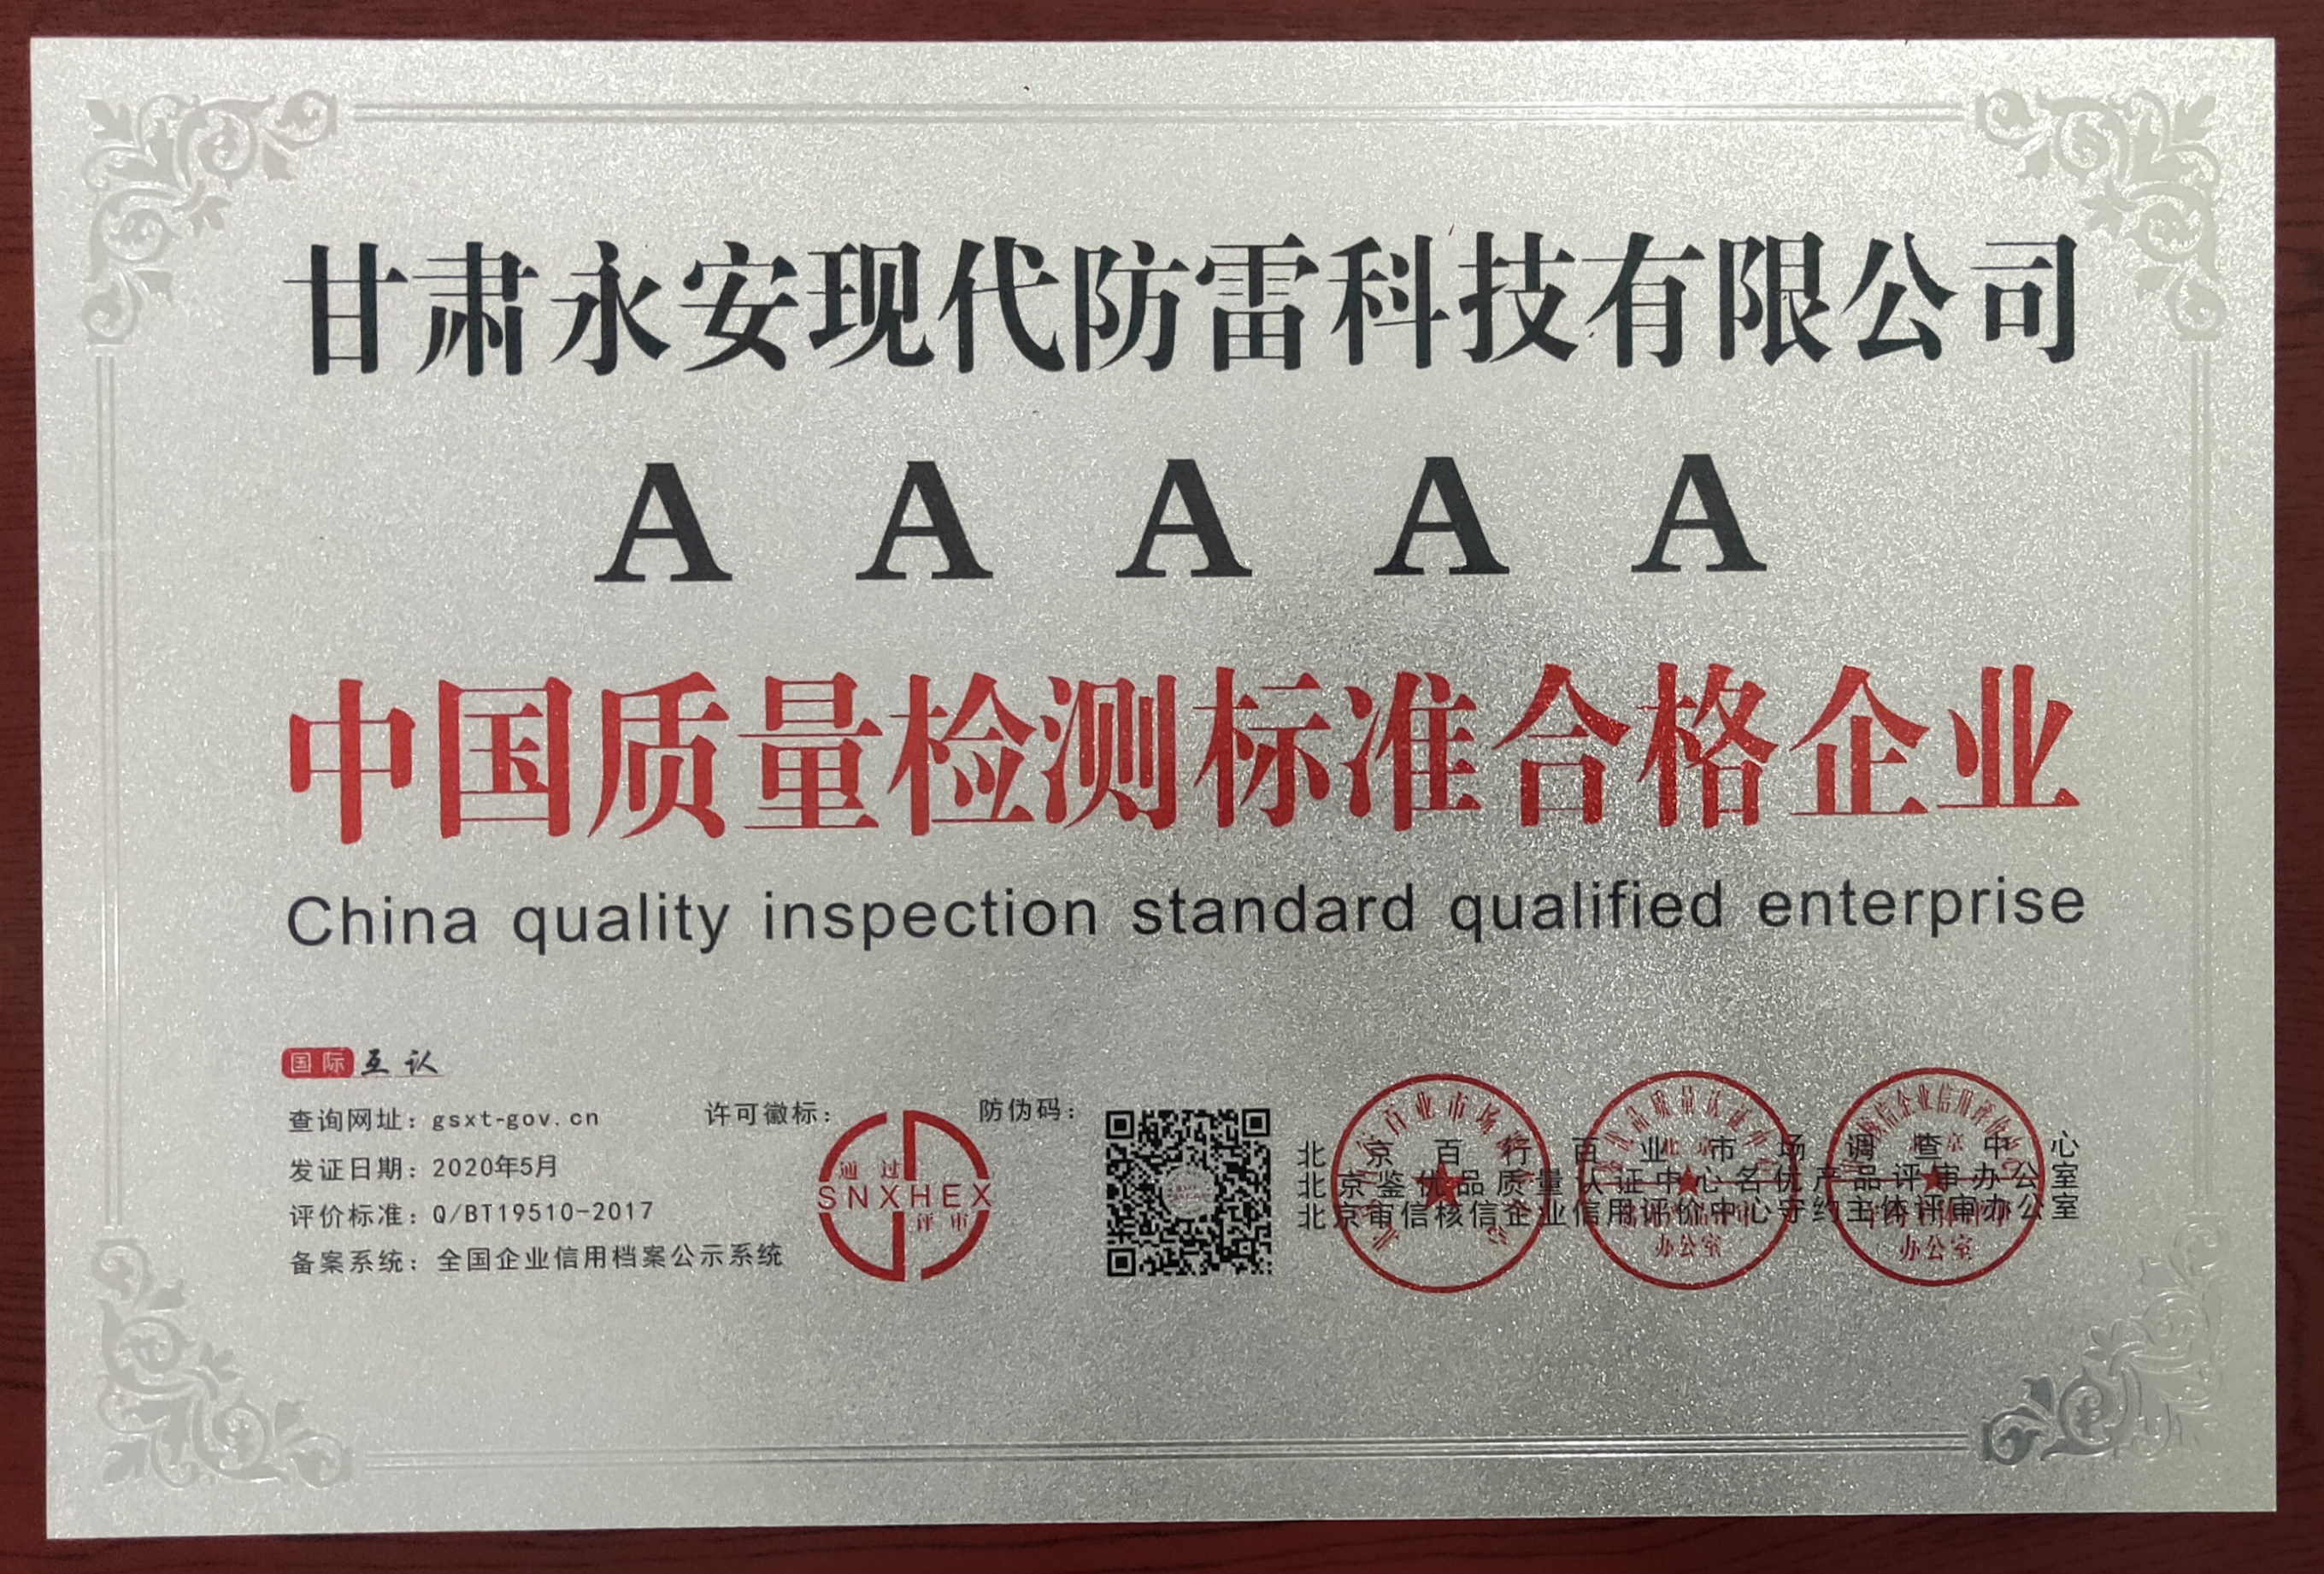 2020年05月我公司被評為“中國質量檢測標準合格企業”